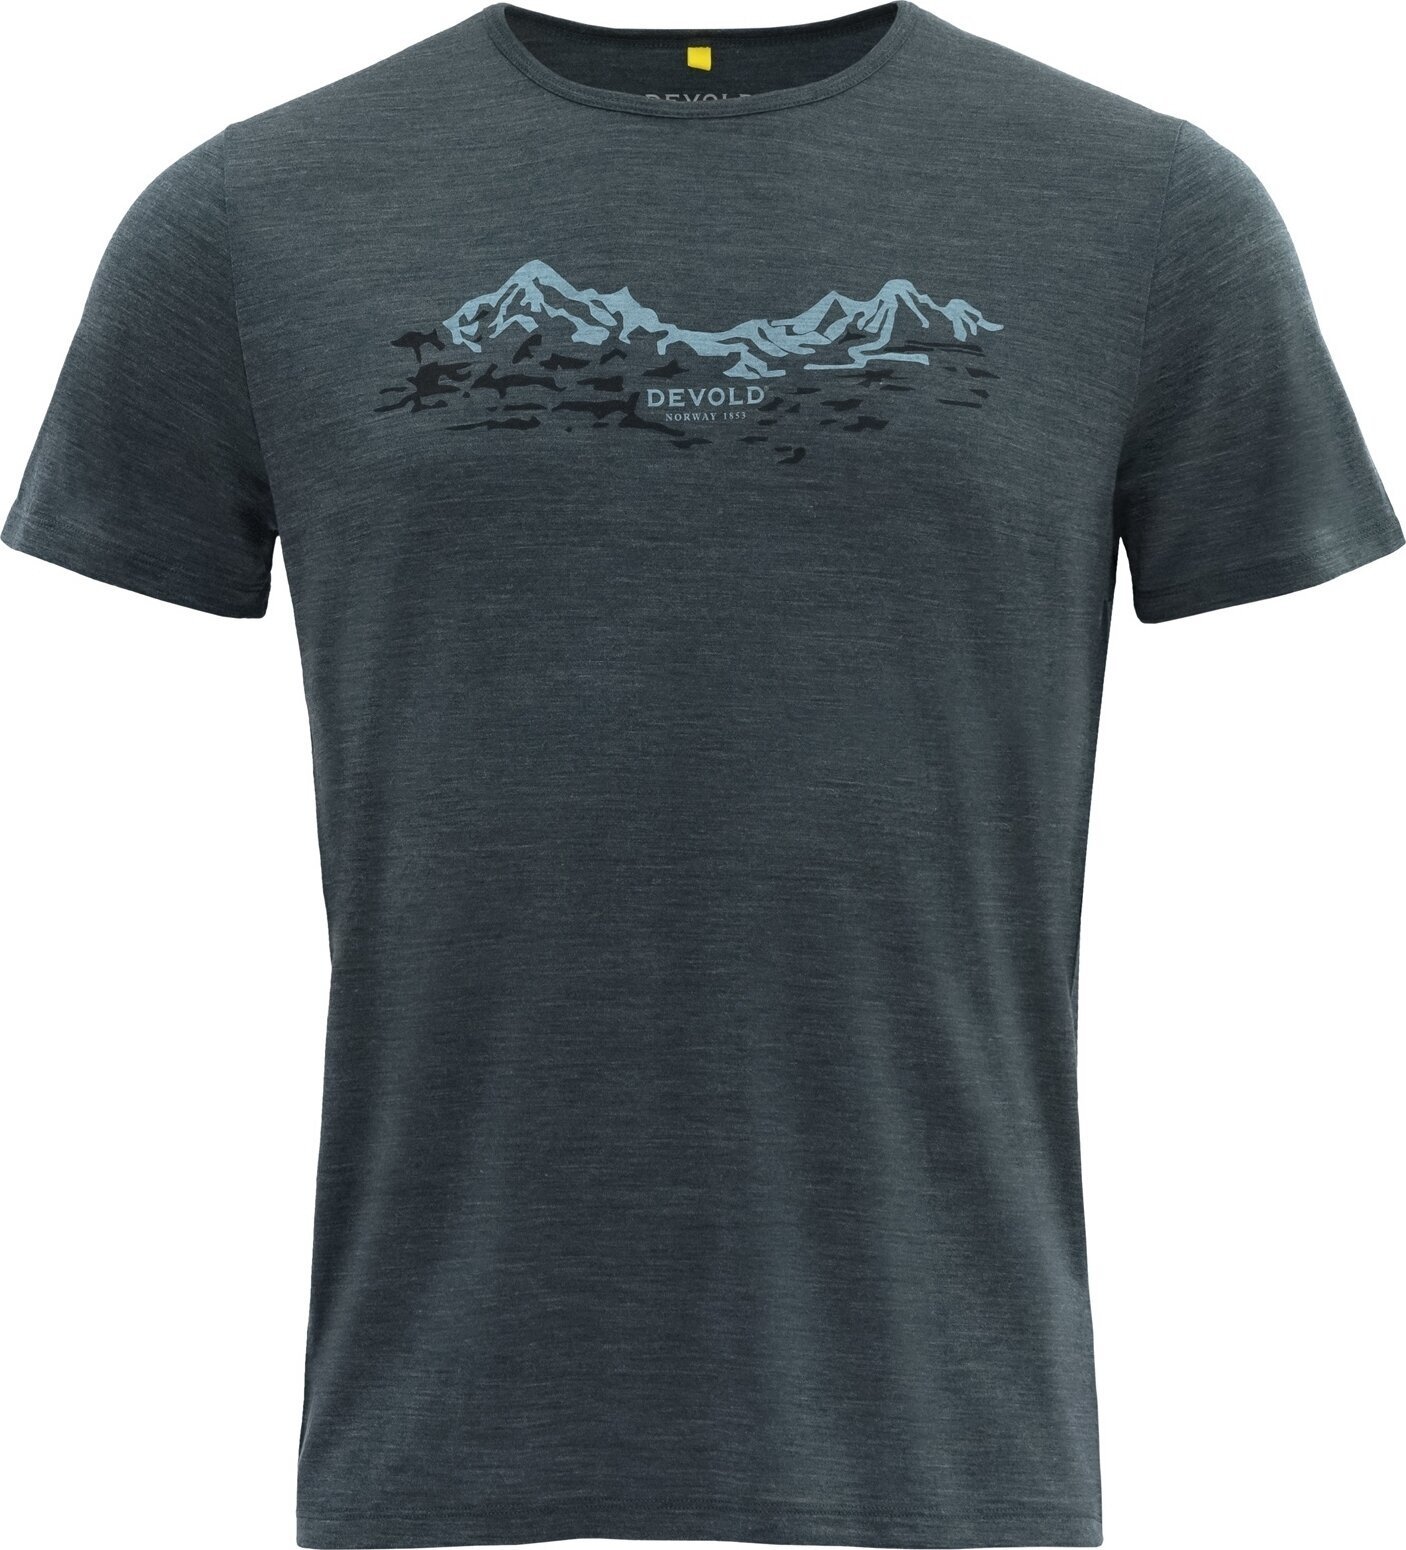 T-shirt outdoor Devold Utladalen Merino 130 Tee Man Woods S T-shirt